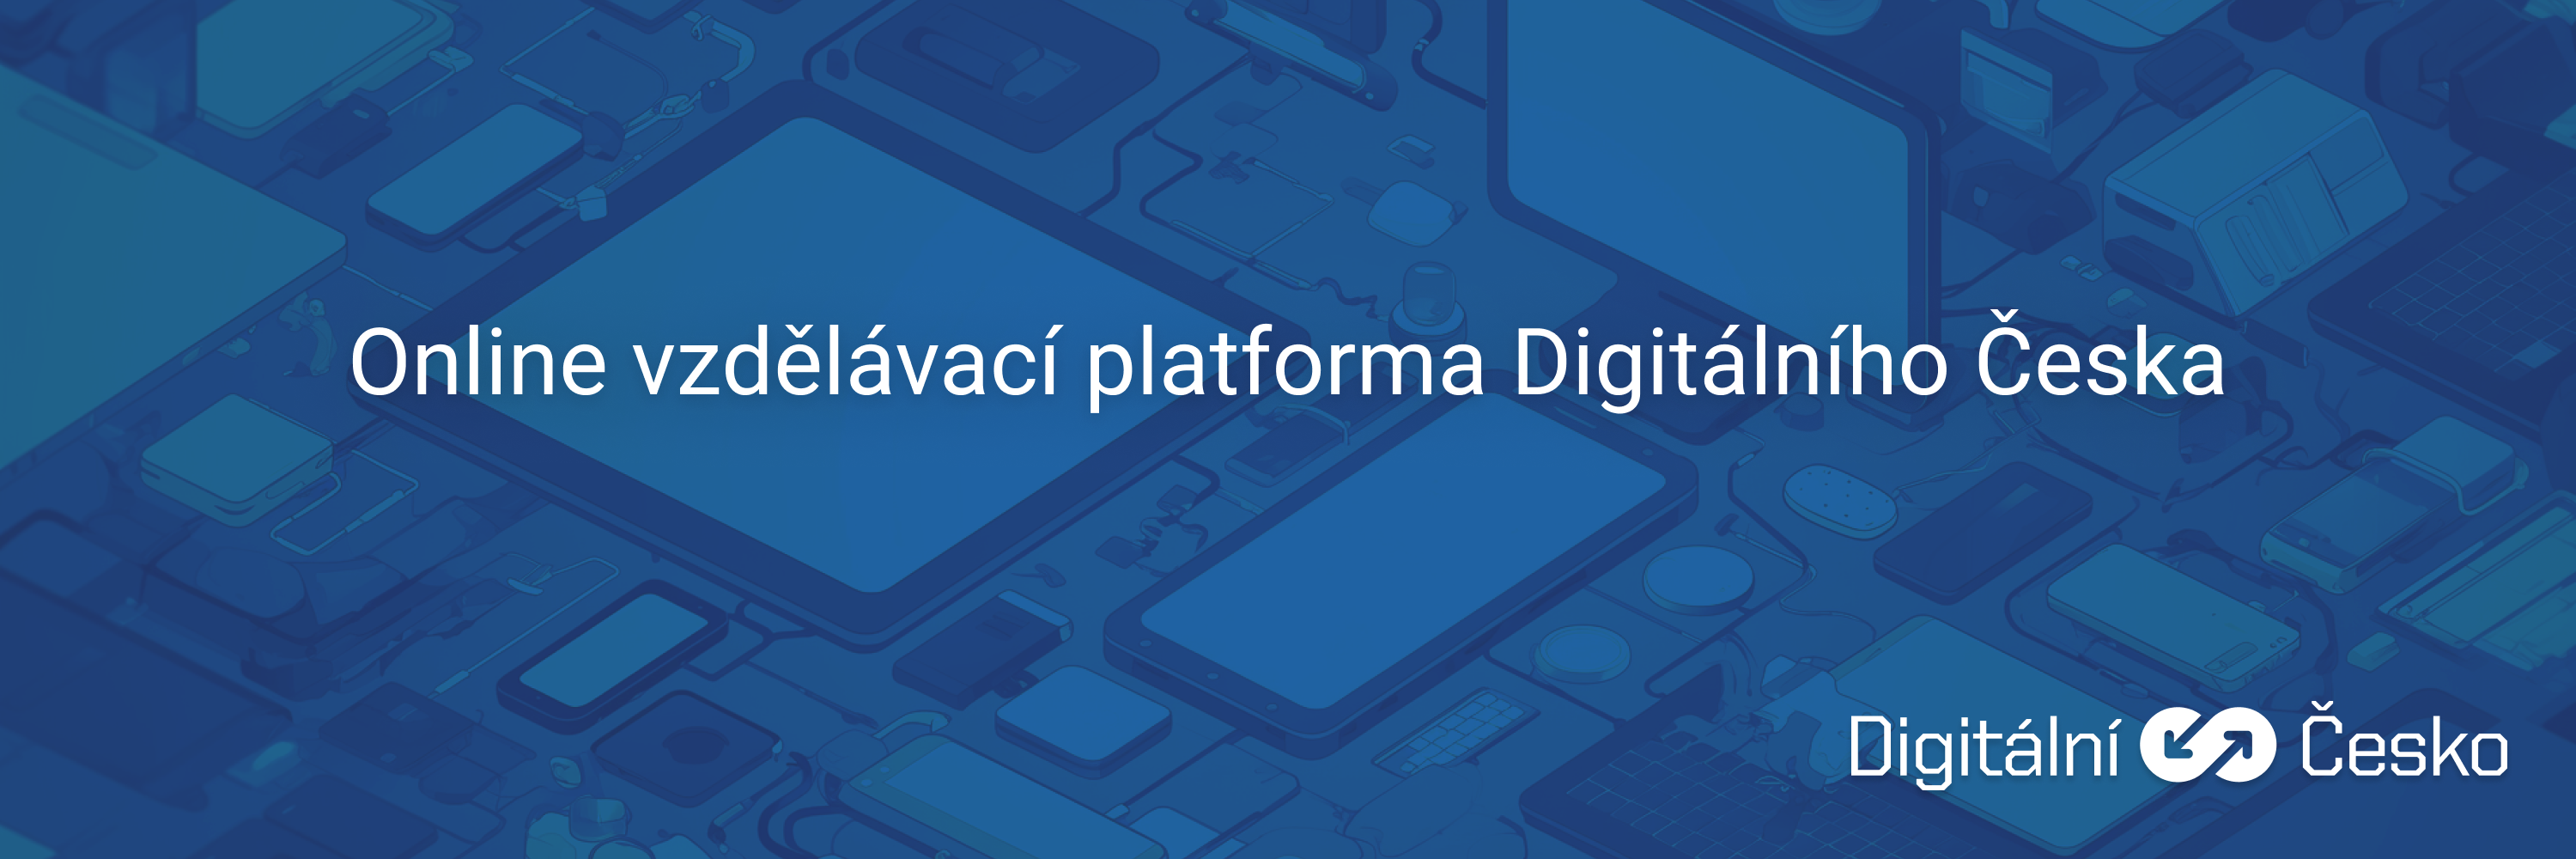 On-line vzdělávací platforma Digitálního Česka